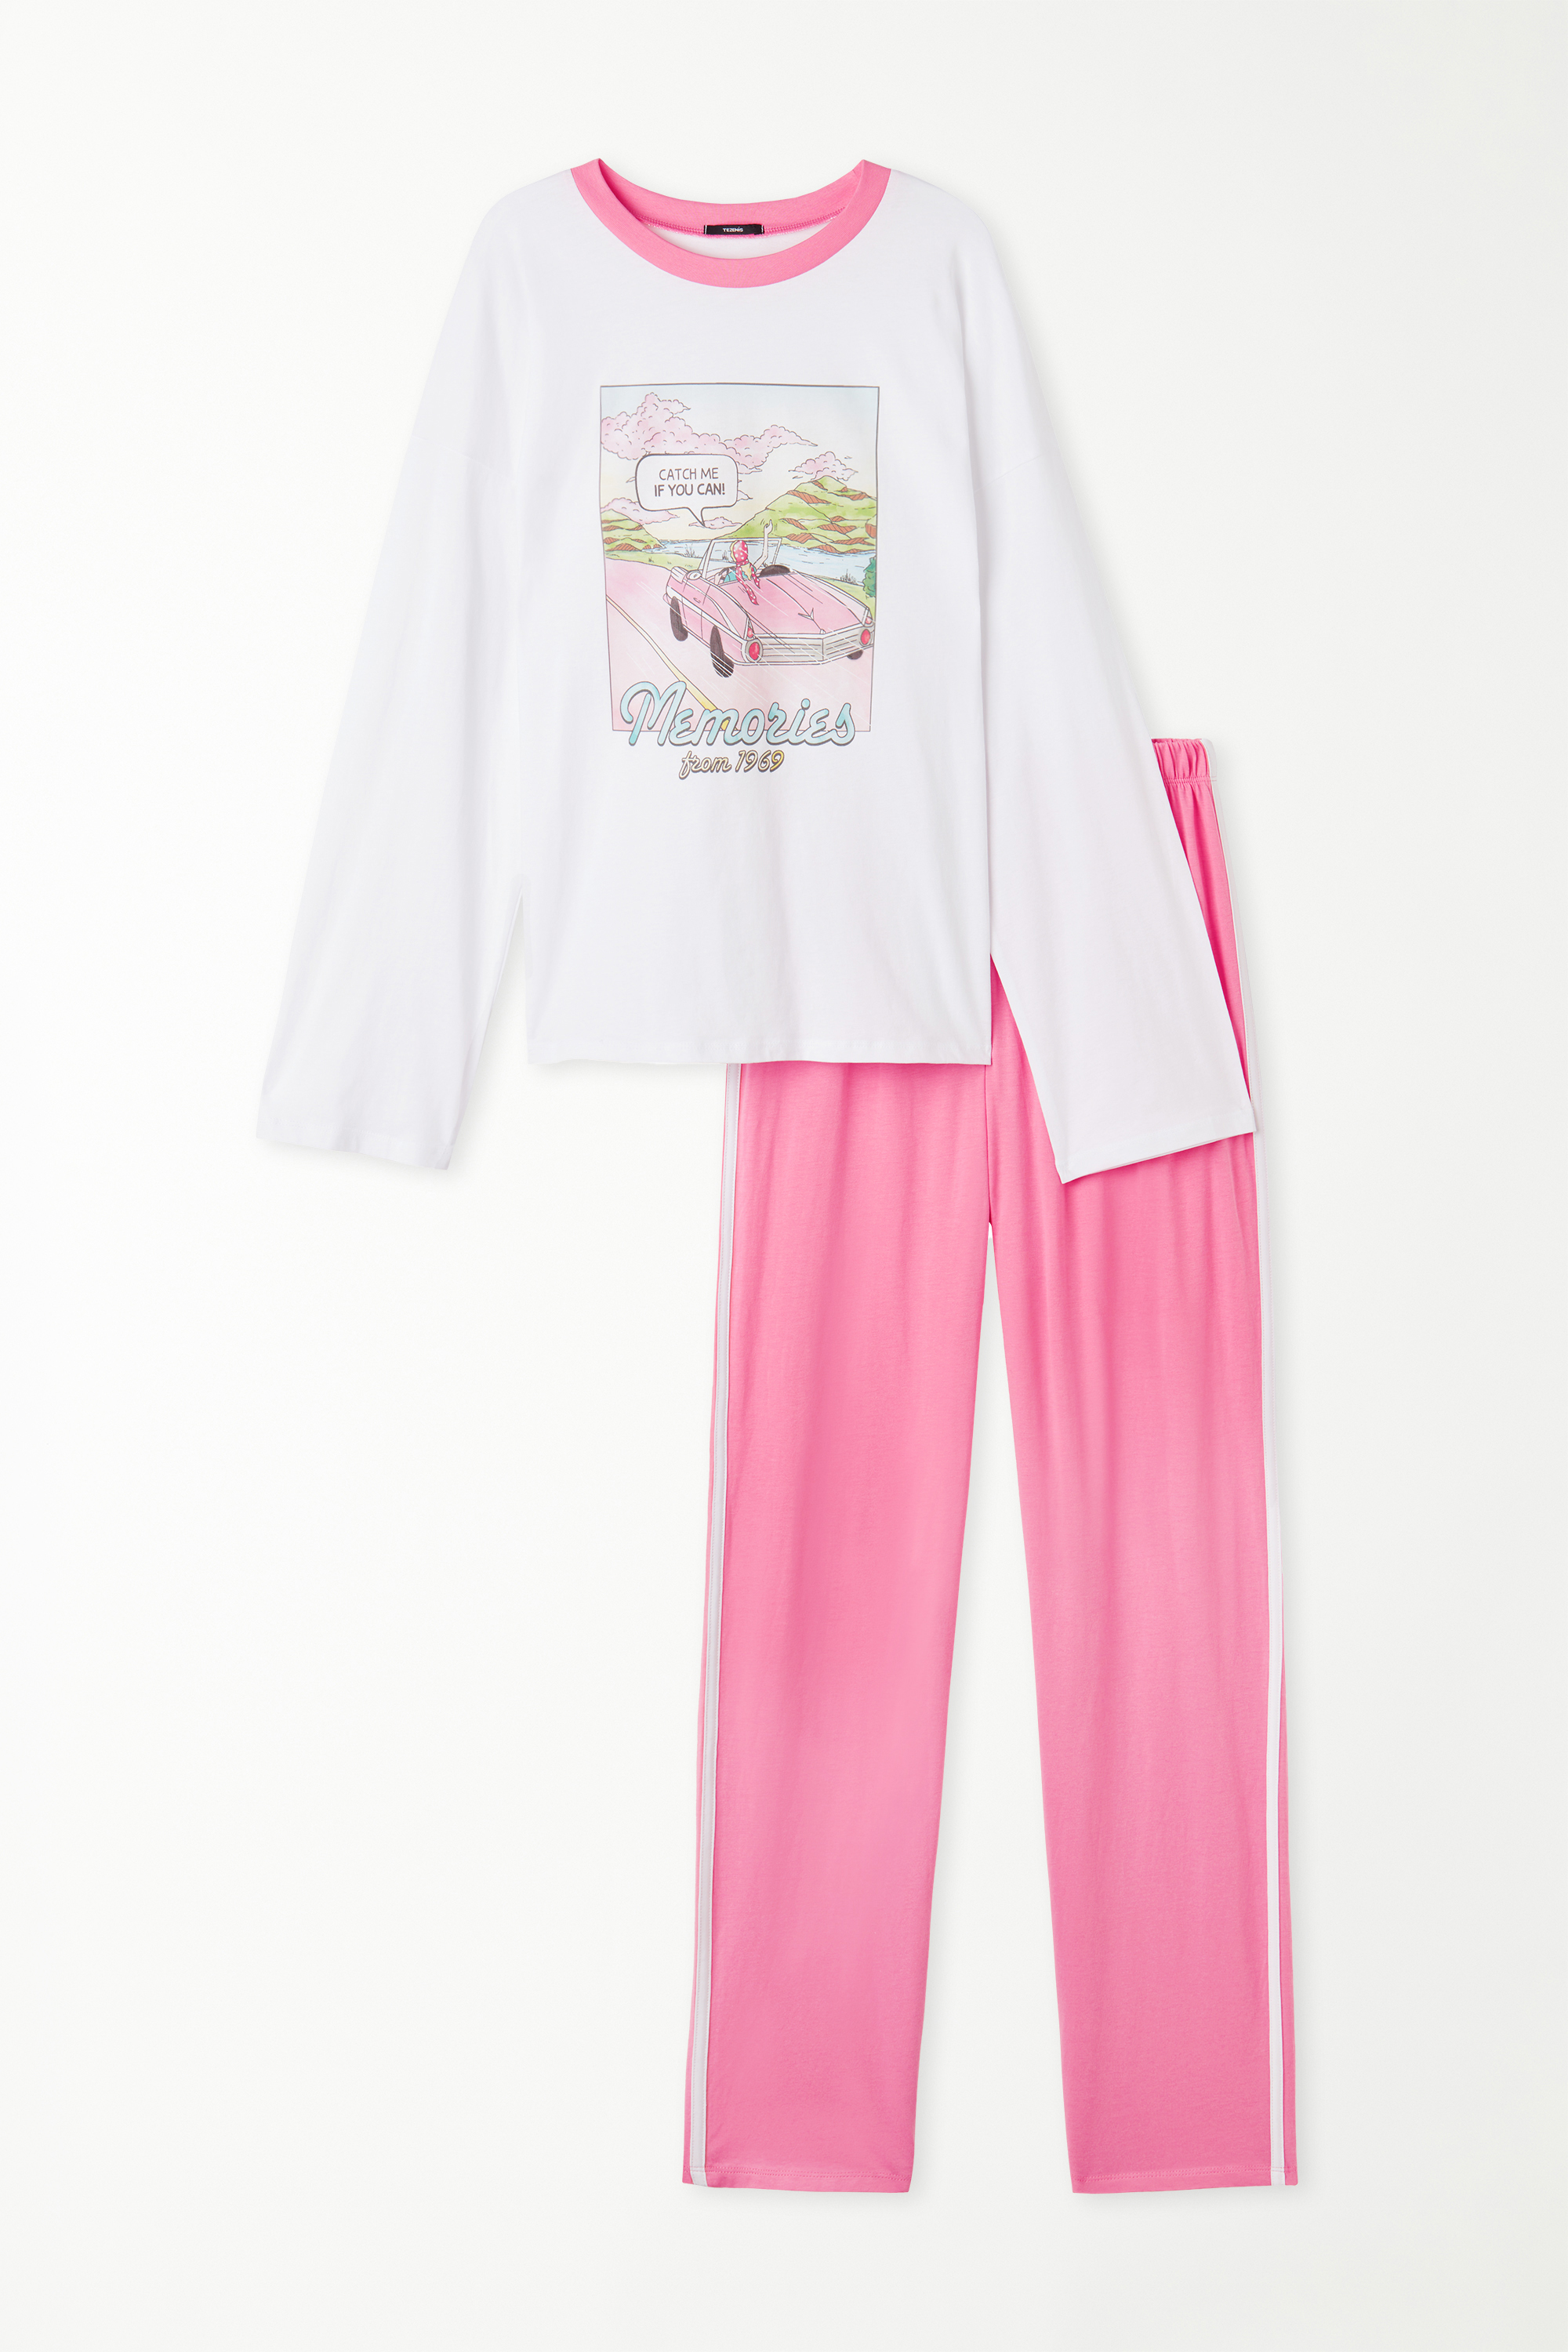 Pijama Comprido em Algodão Estampado "Memories"